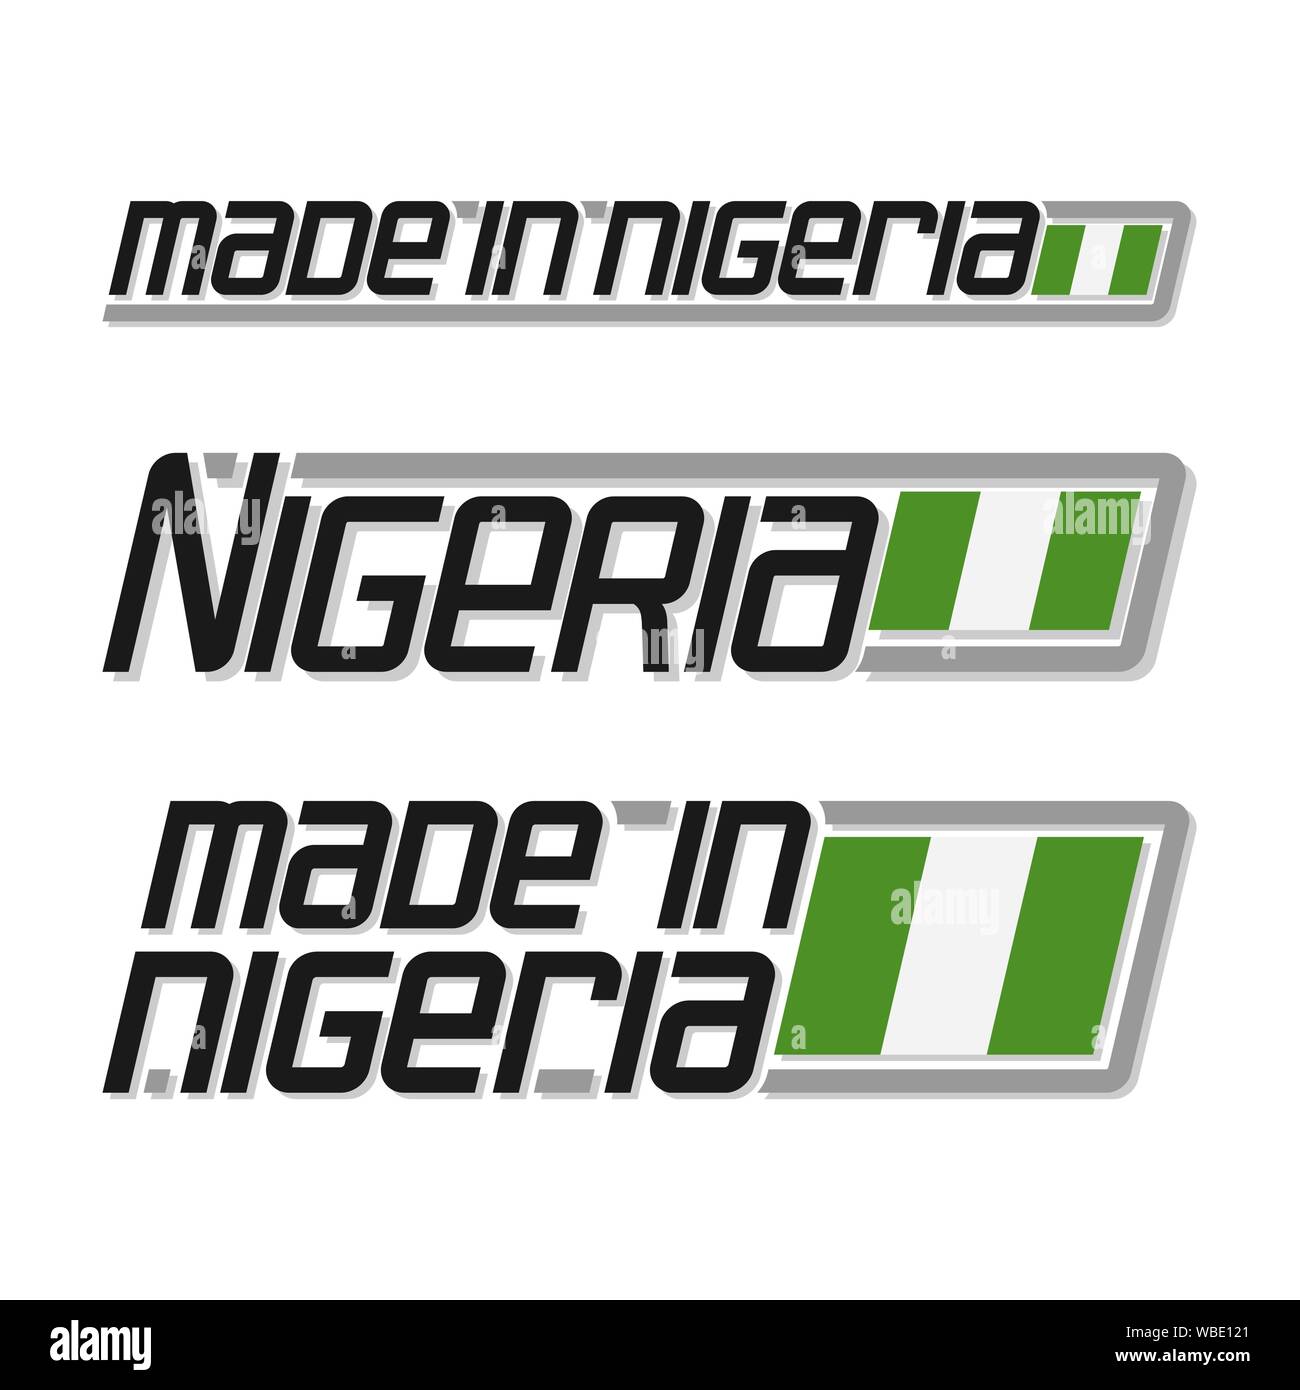 Illustrazione Vettoriale del logo 'made in Nigeria', a tre isolati Nigerian National flag di stato e la Nigeria di testo su sfondo bianco. Illustrazione Vettoriale